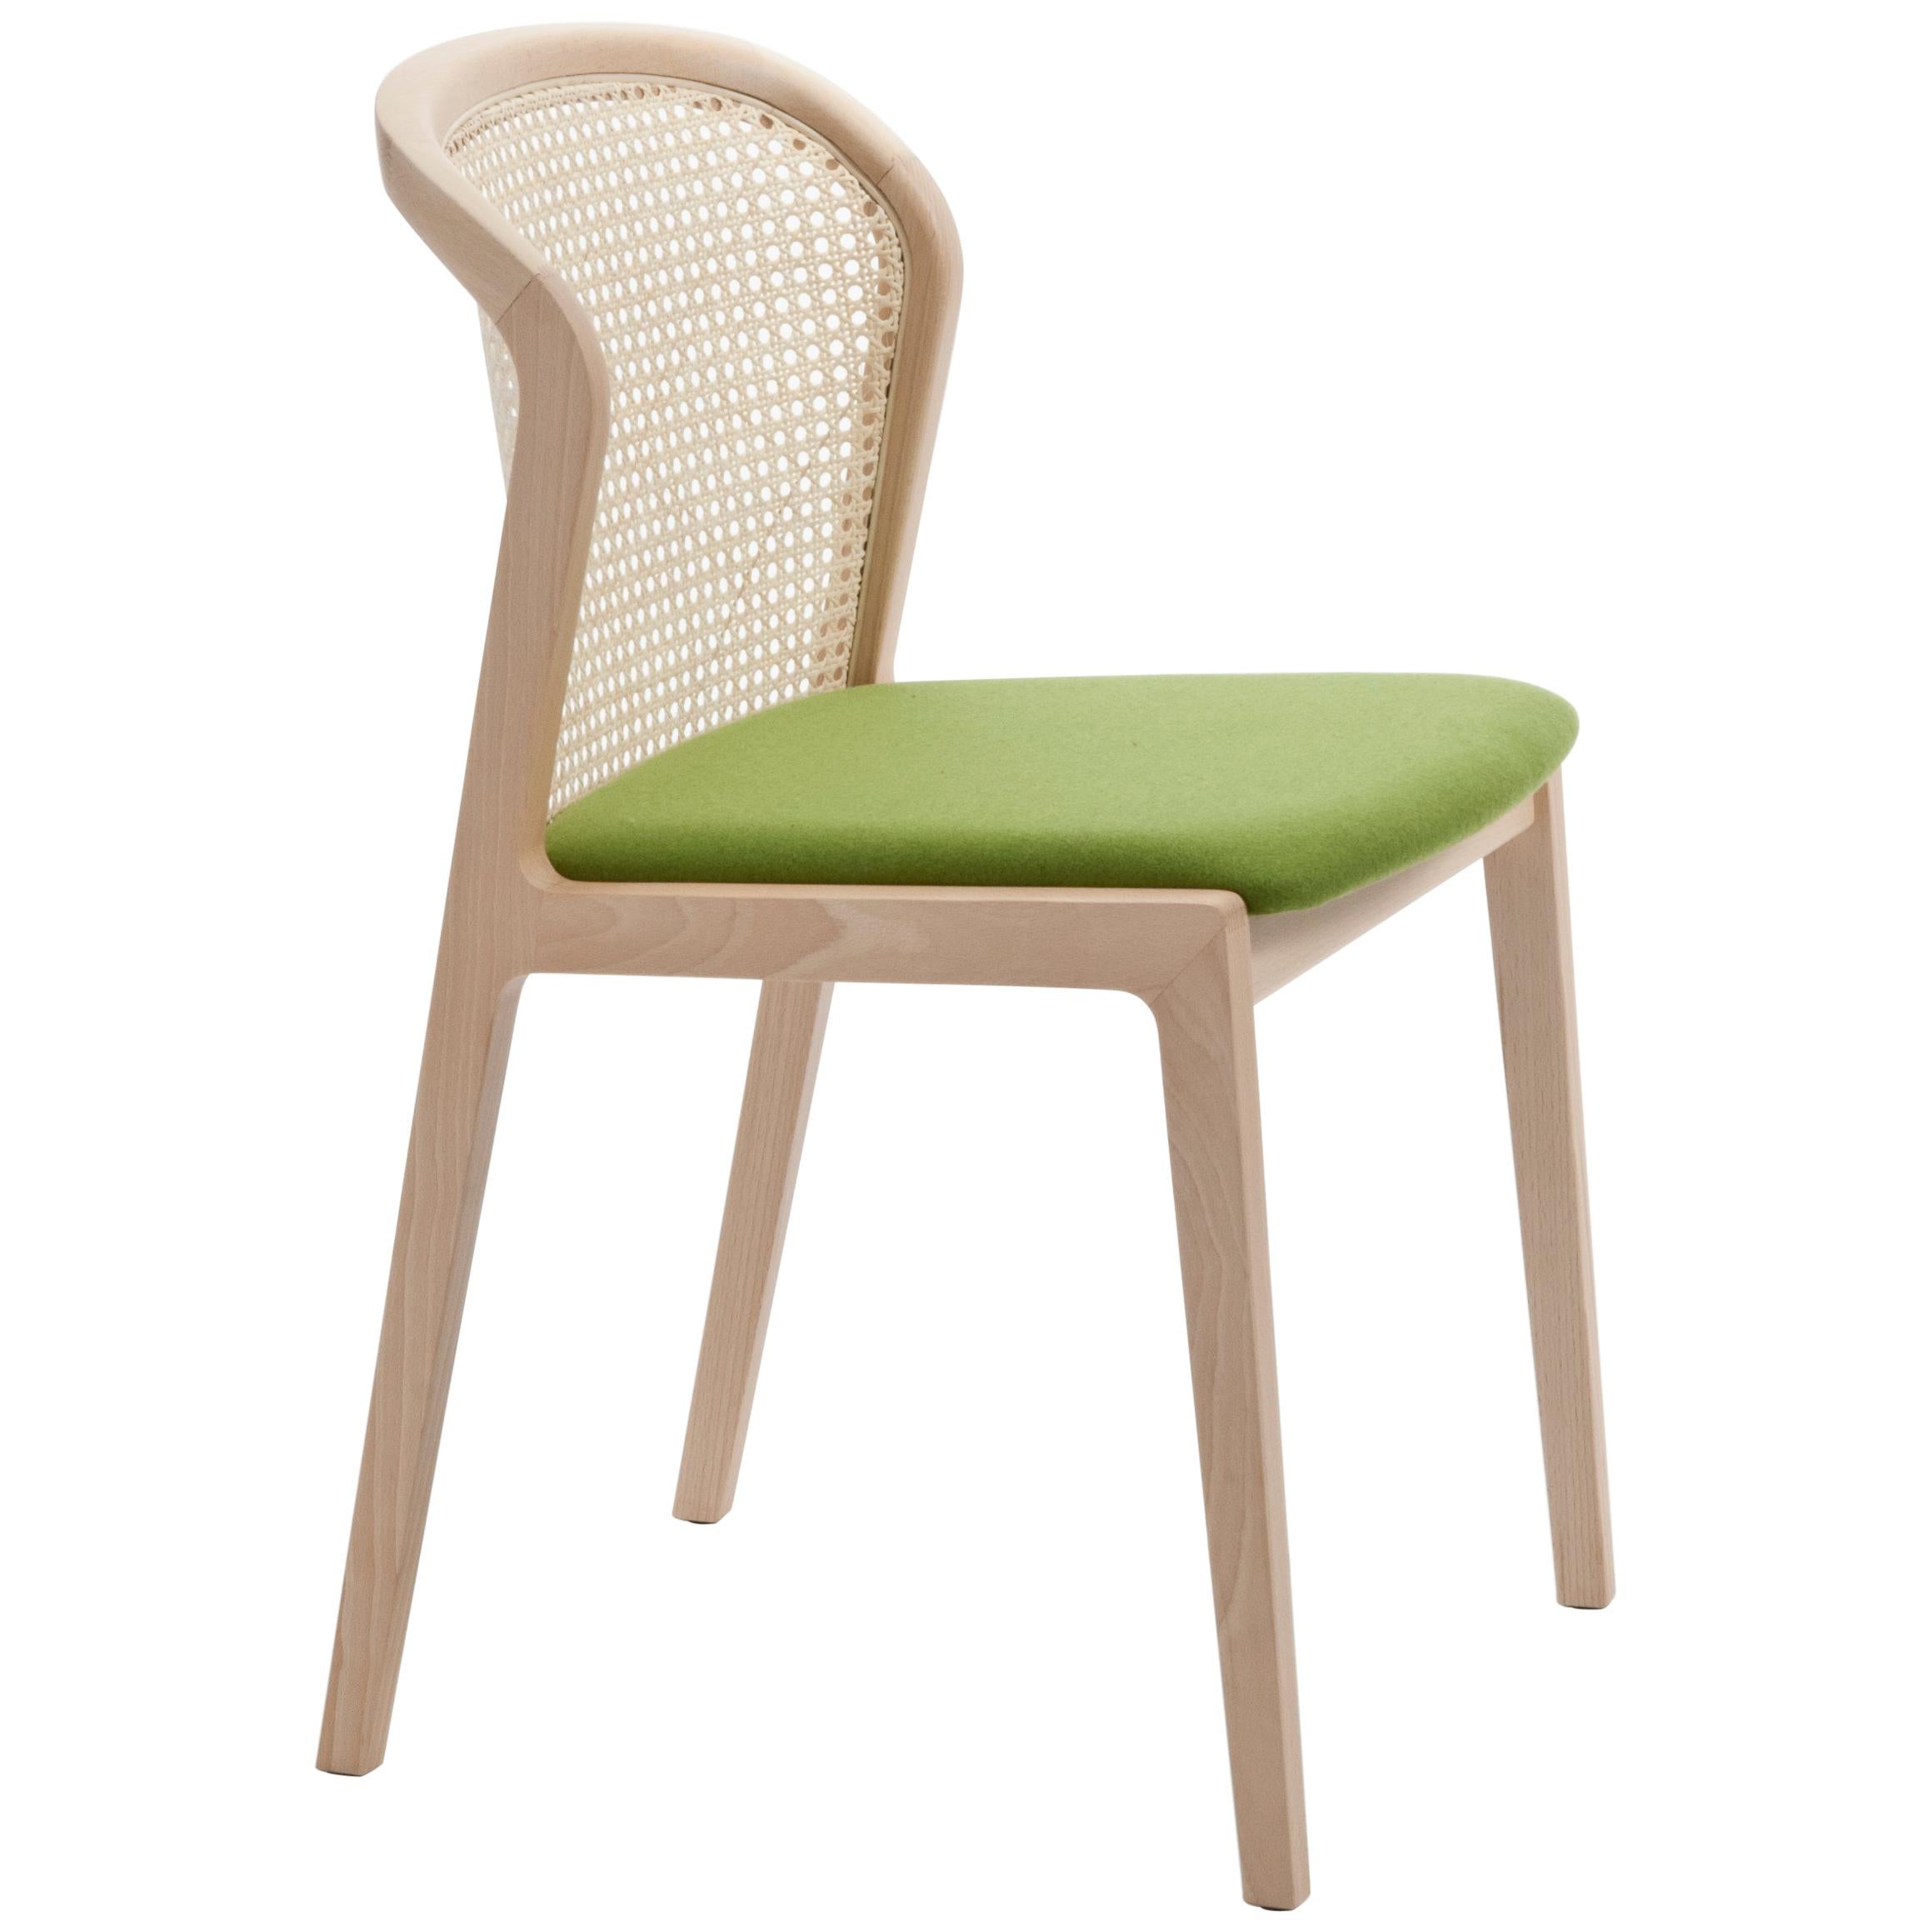 Chaise Vienna de Col, design moderne en bois et paille, assise tapissée verte en vente